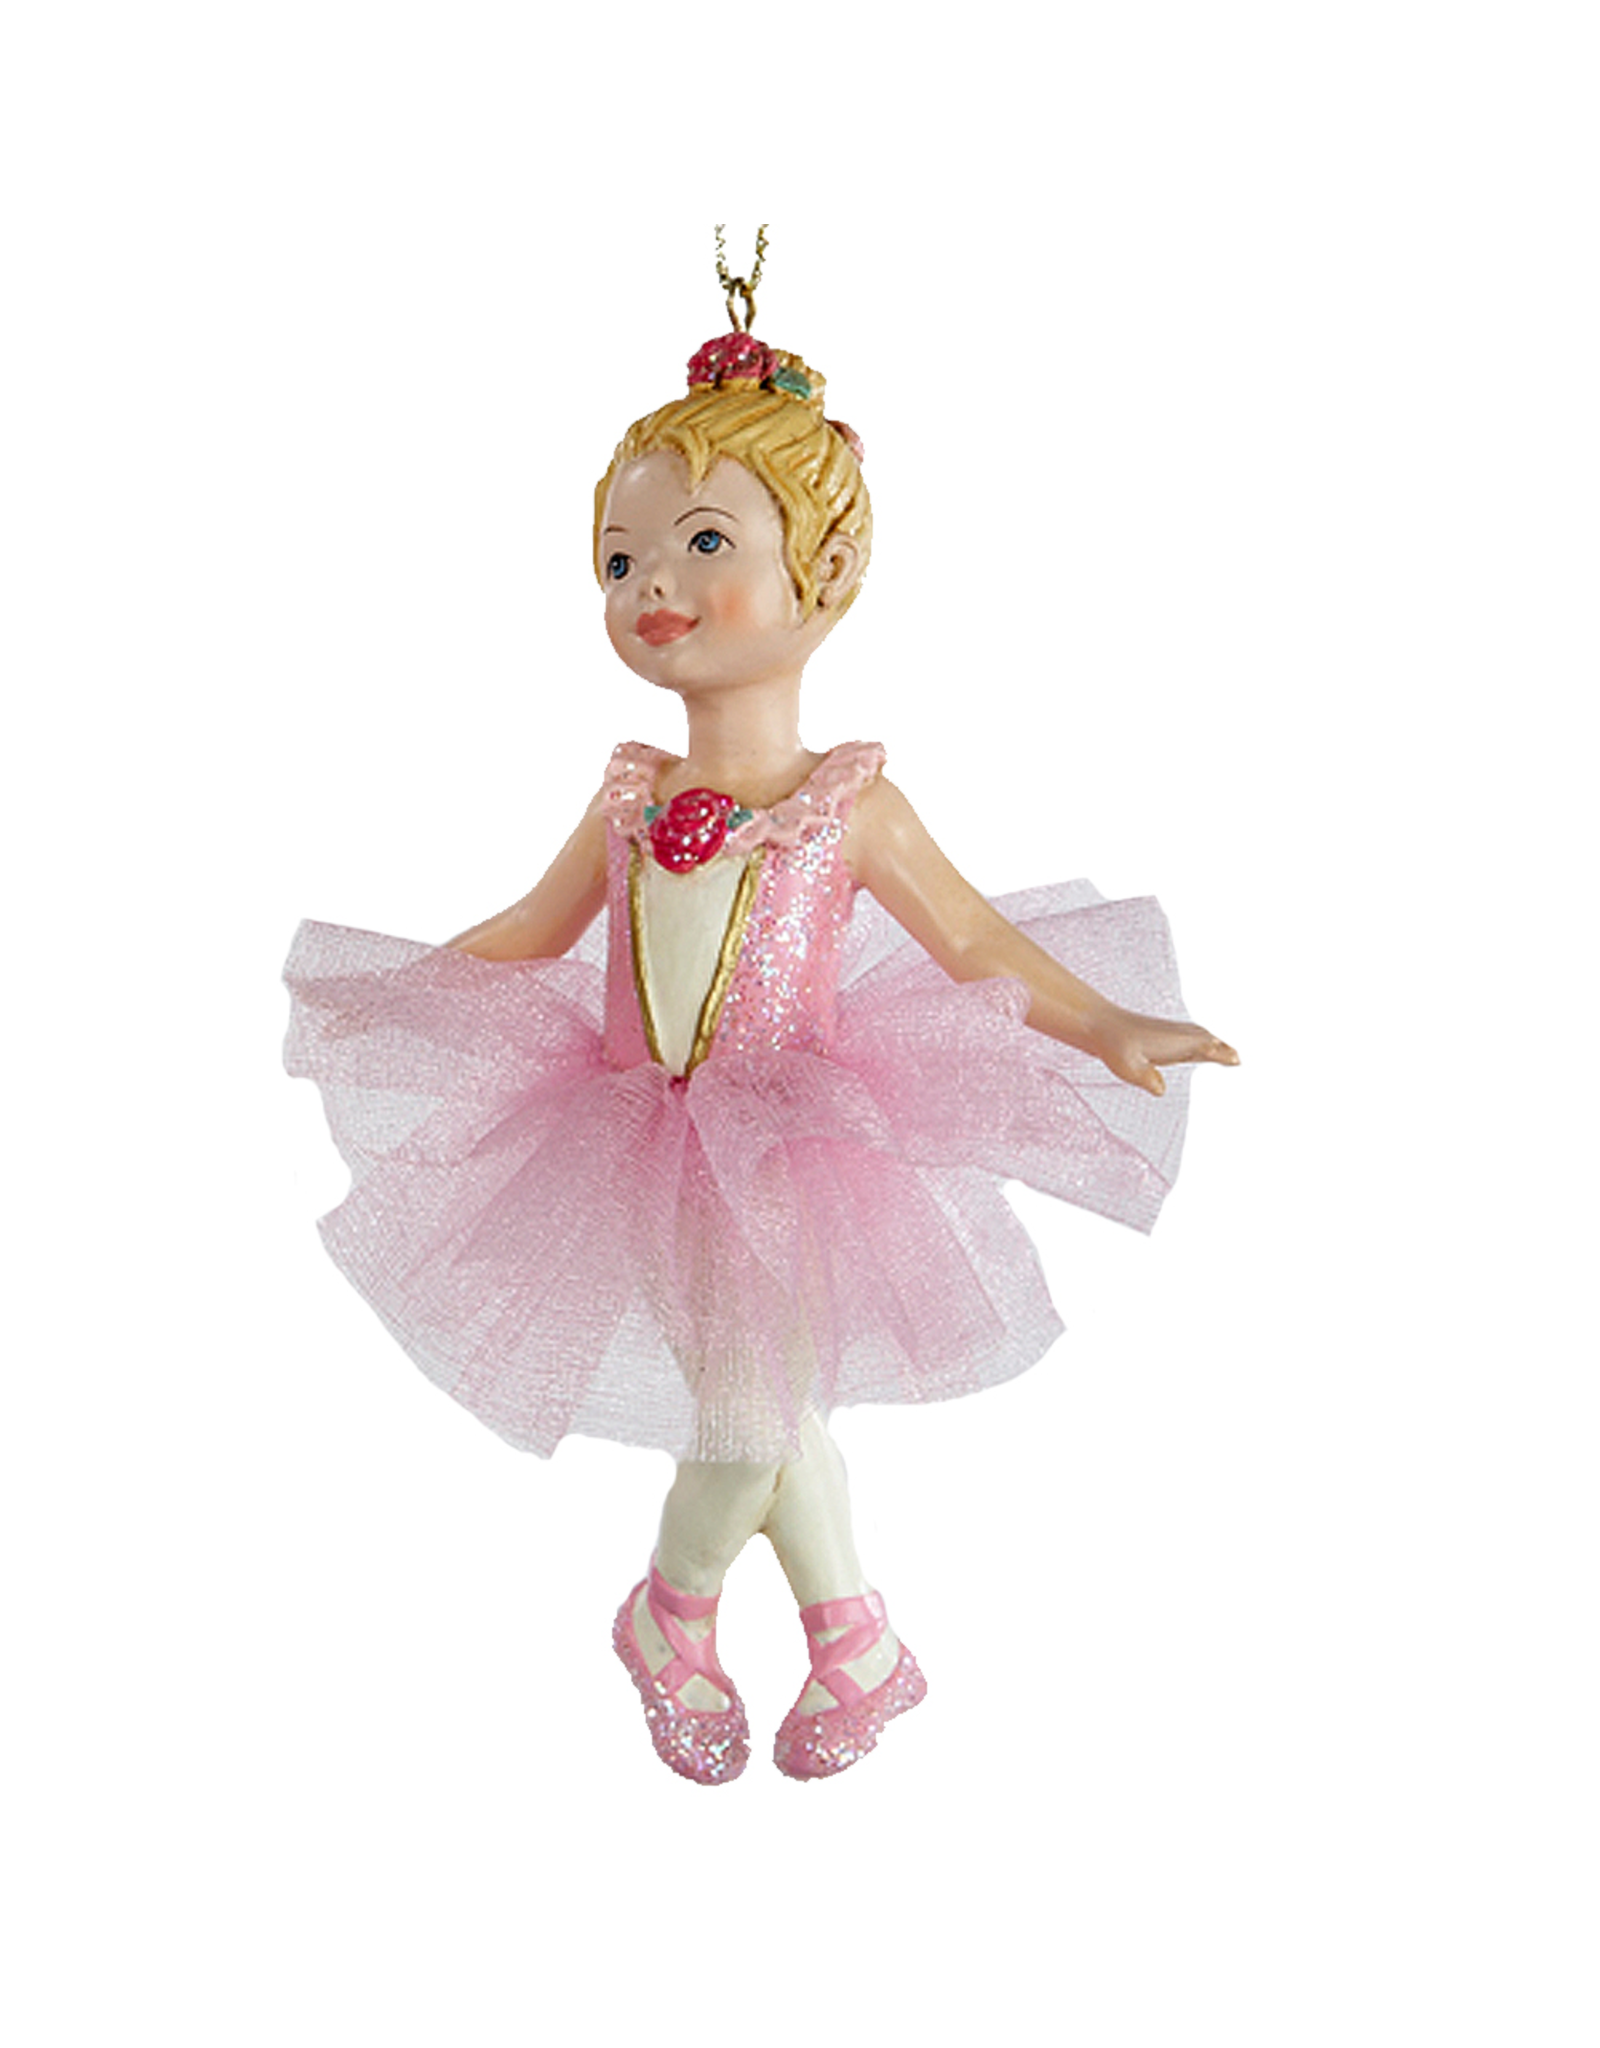 Kurt Adler Ballerina Ballet Girl Ornament Pink -B